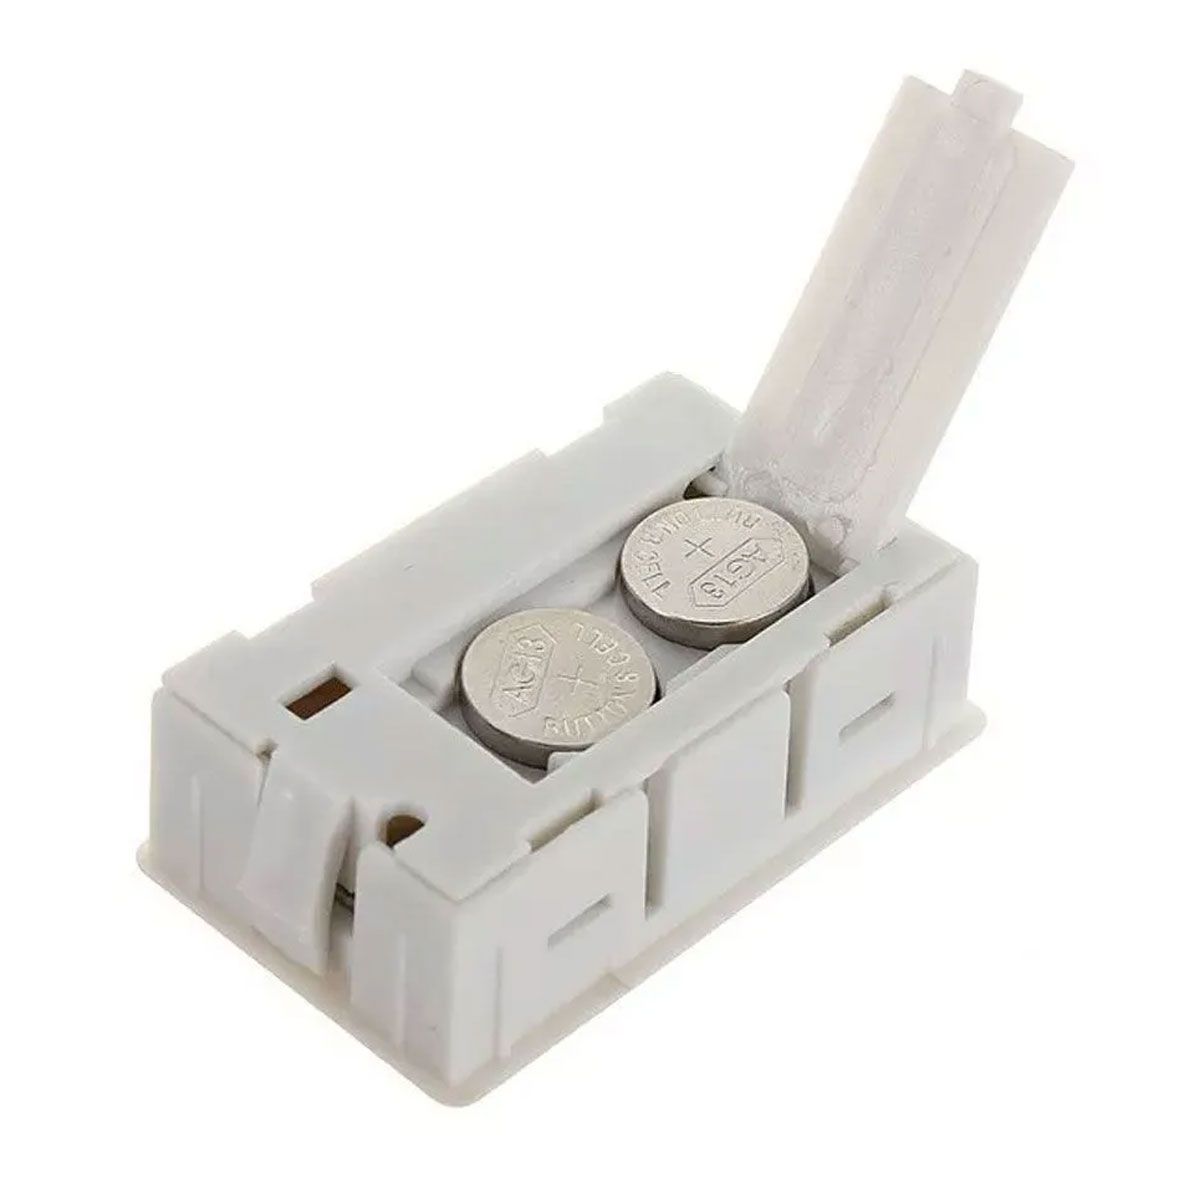 Mini Termômetro - Higrômetro Digital / Mede Temperatura e Umidade COM Bateria - Branca